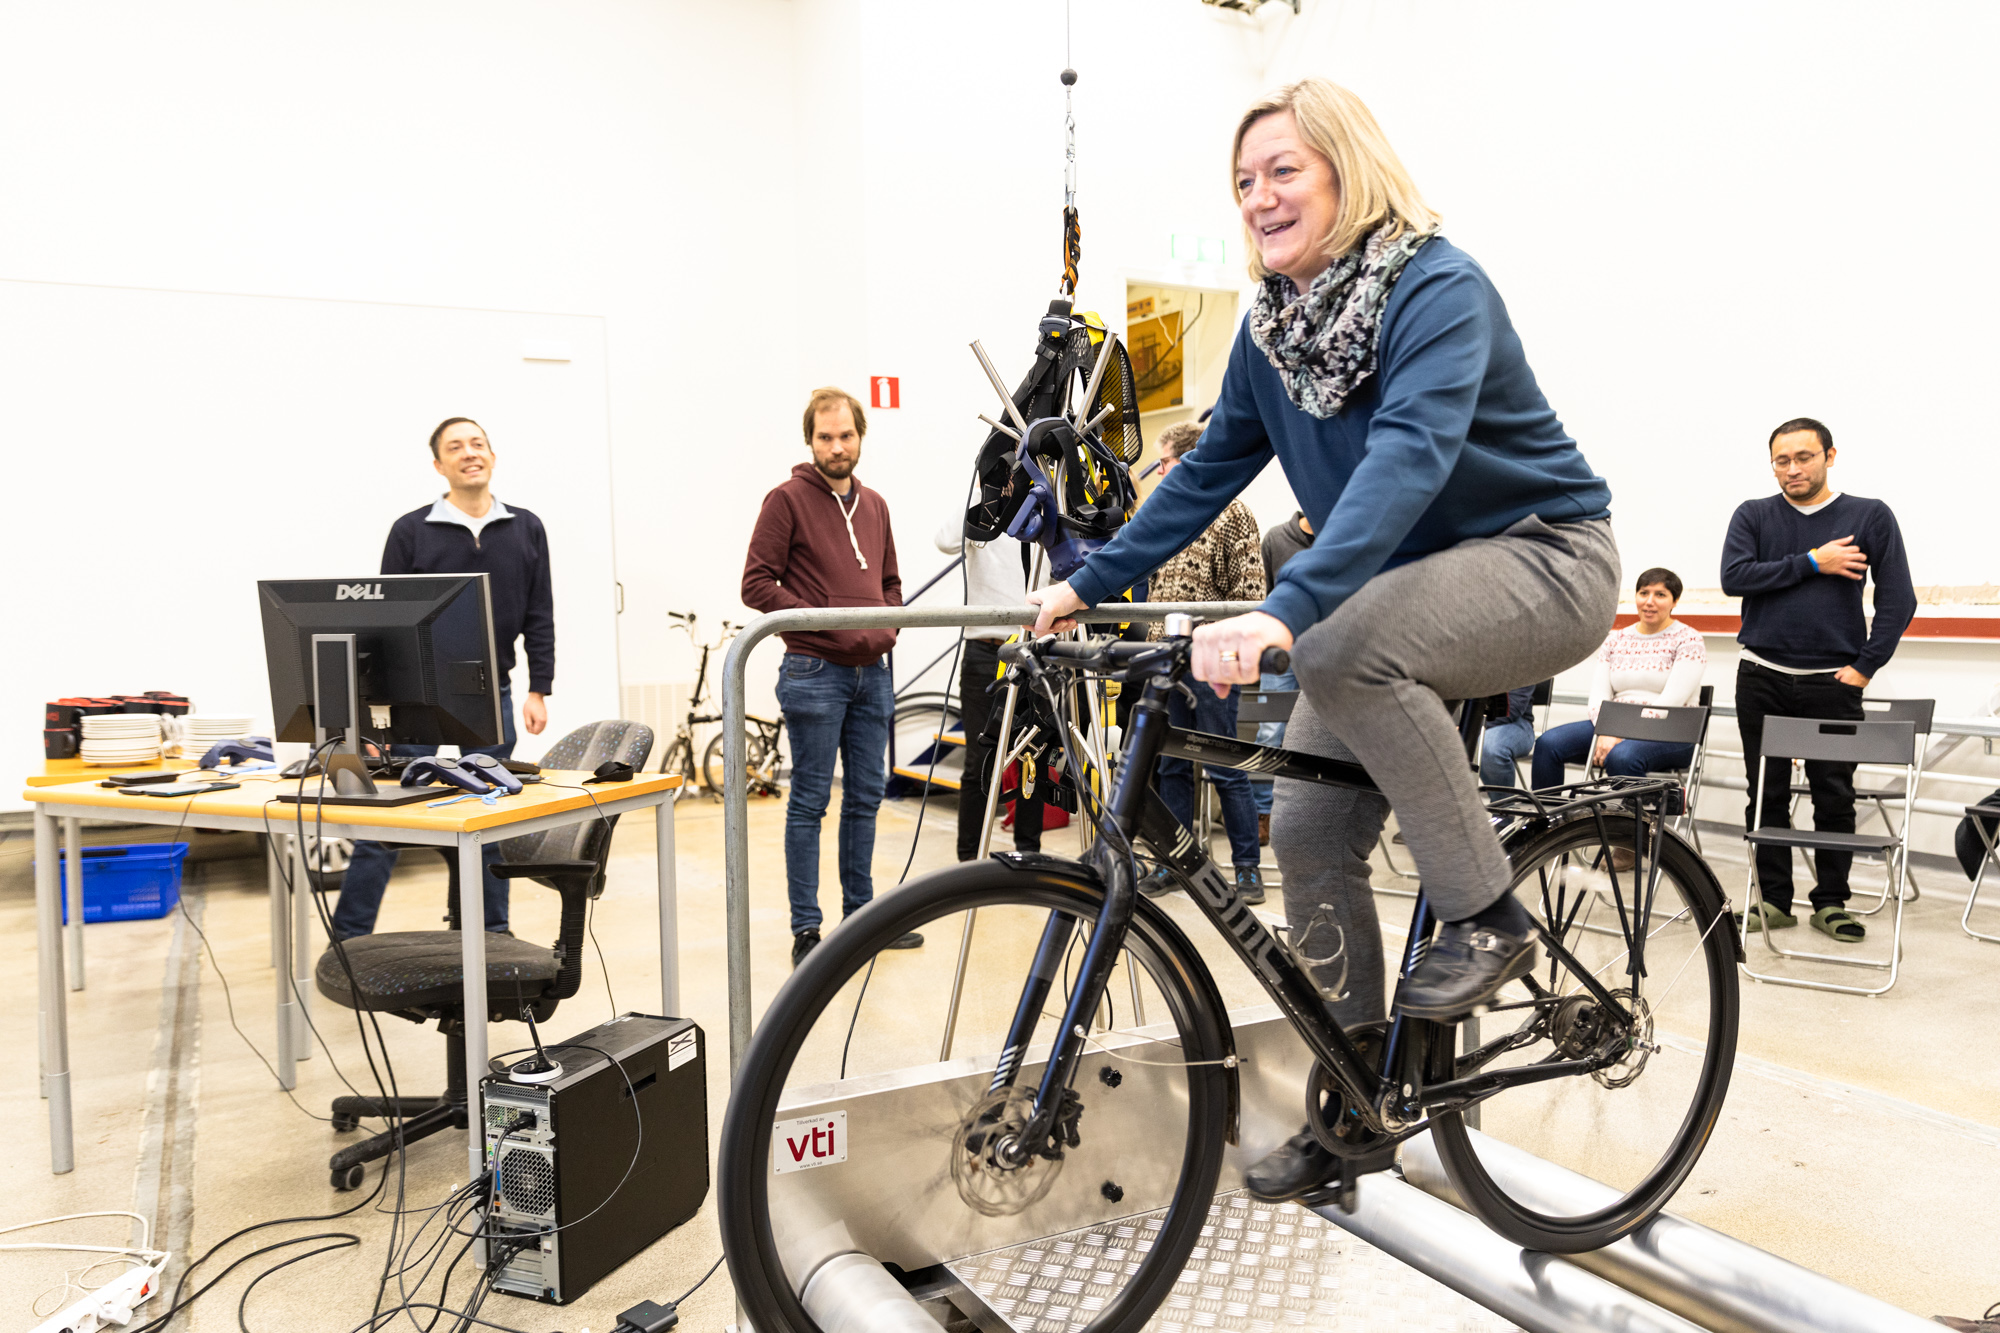 Projektet ska ge förståelse exempelvis vilken sorts skyltning och vägmarkering som är bäst i varierande miljöer eller hur cyklister upplever olika typer av omkörningar, menar Katja Kircher.